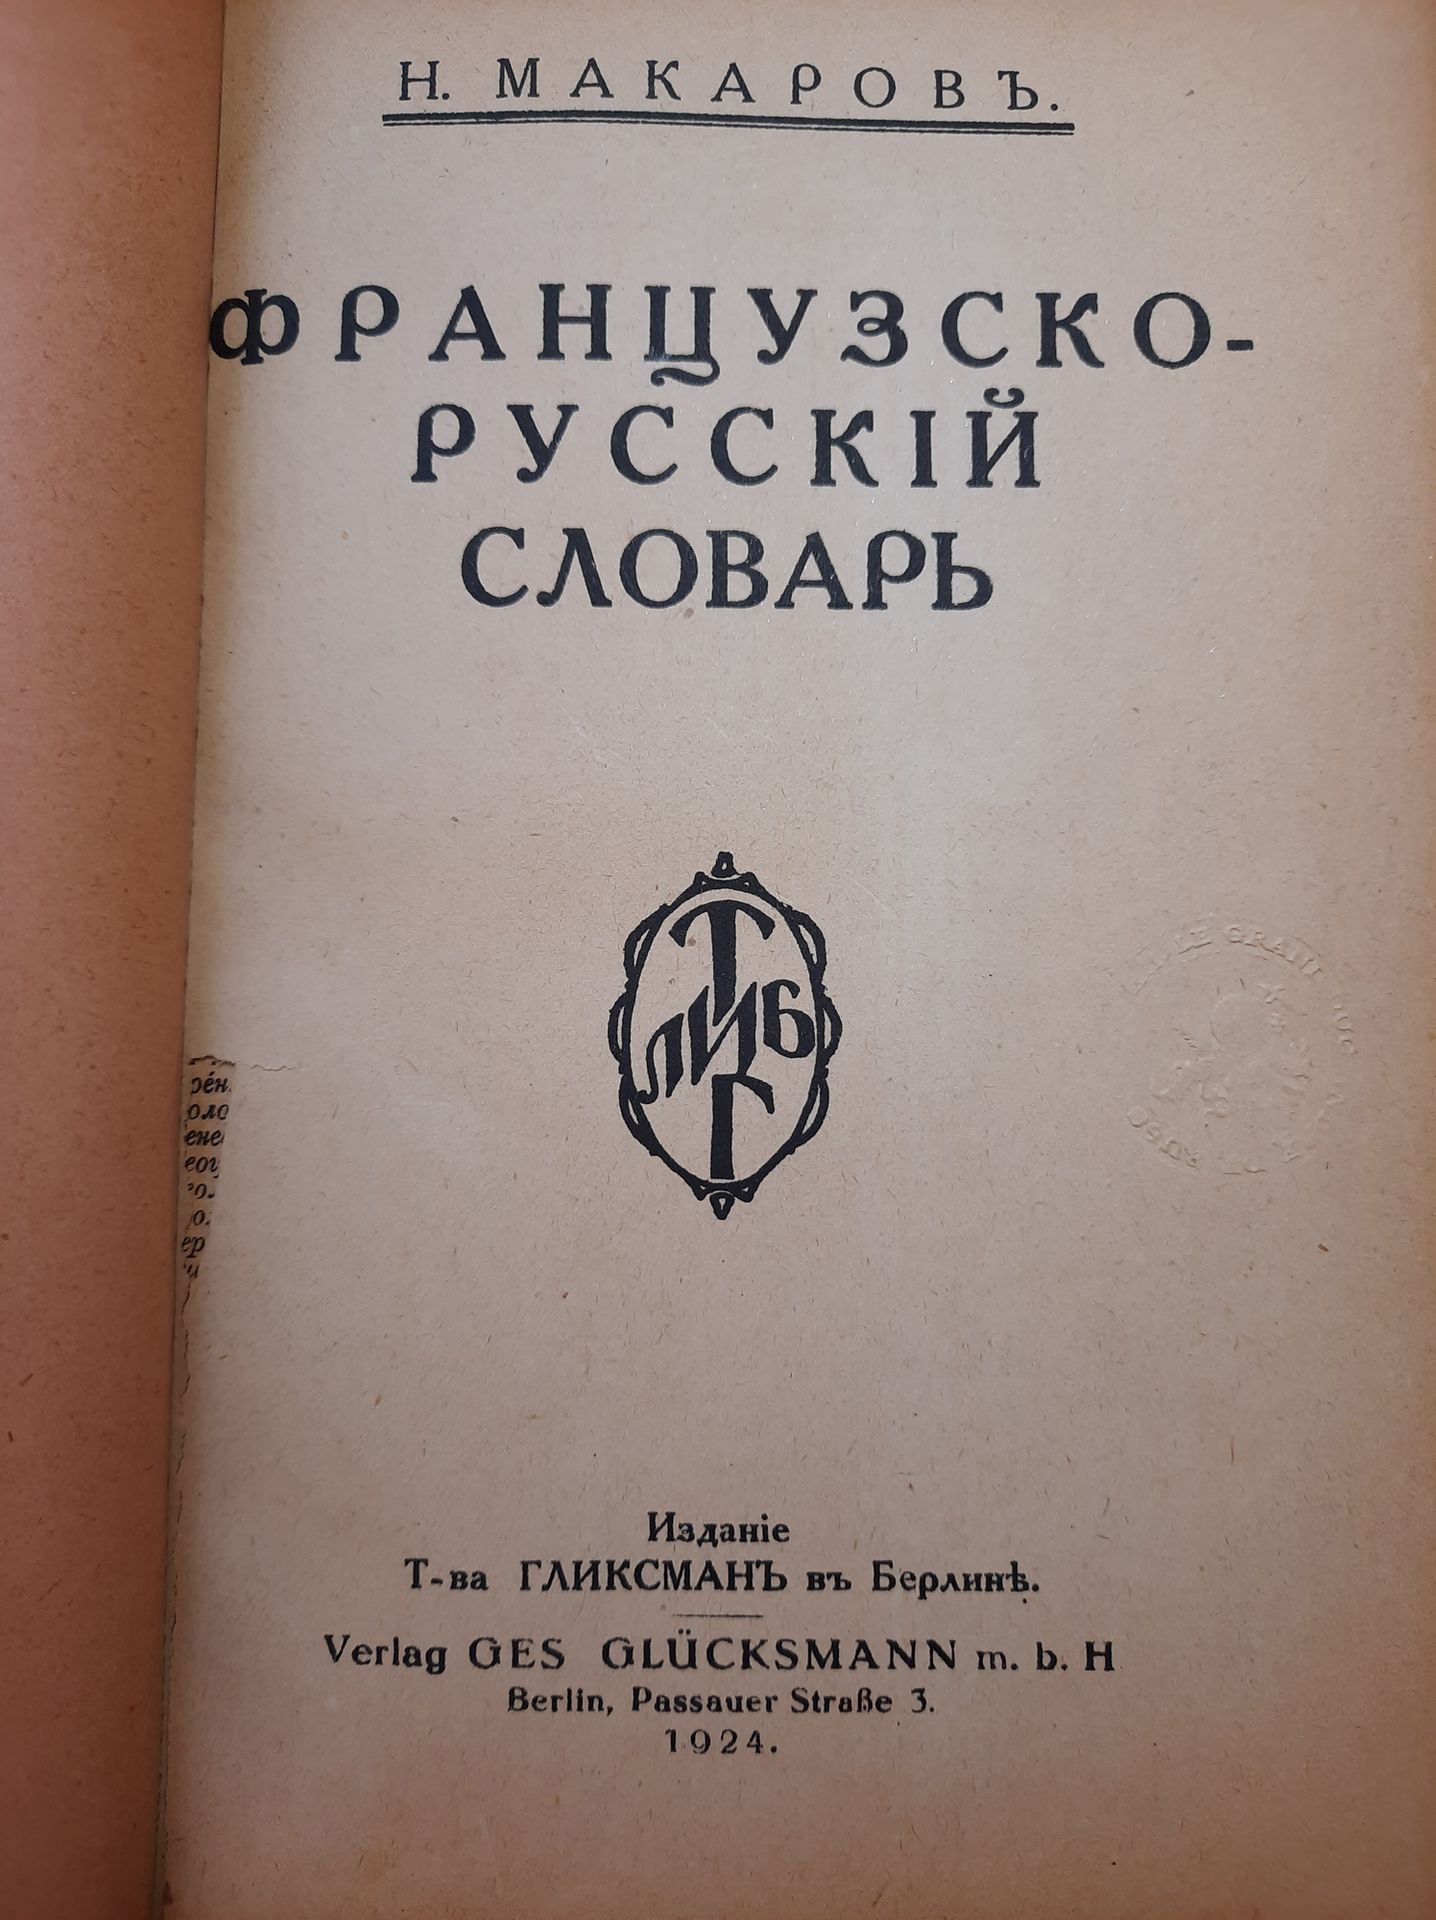 Null 法语-俄语词典。Makarov N.格里斯曼编辑，柏林，1924年。In-8.印有俄罗斯大公安德烈-弗拉基米罗维奇-罗曼诺夫图书馆的印章。



Фр&hellip;